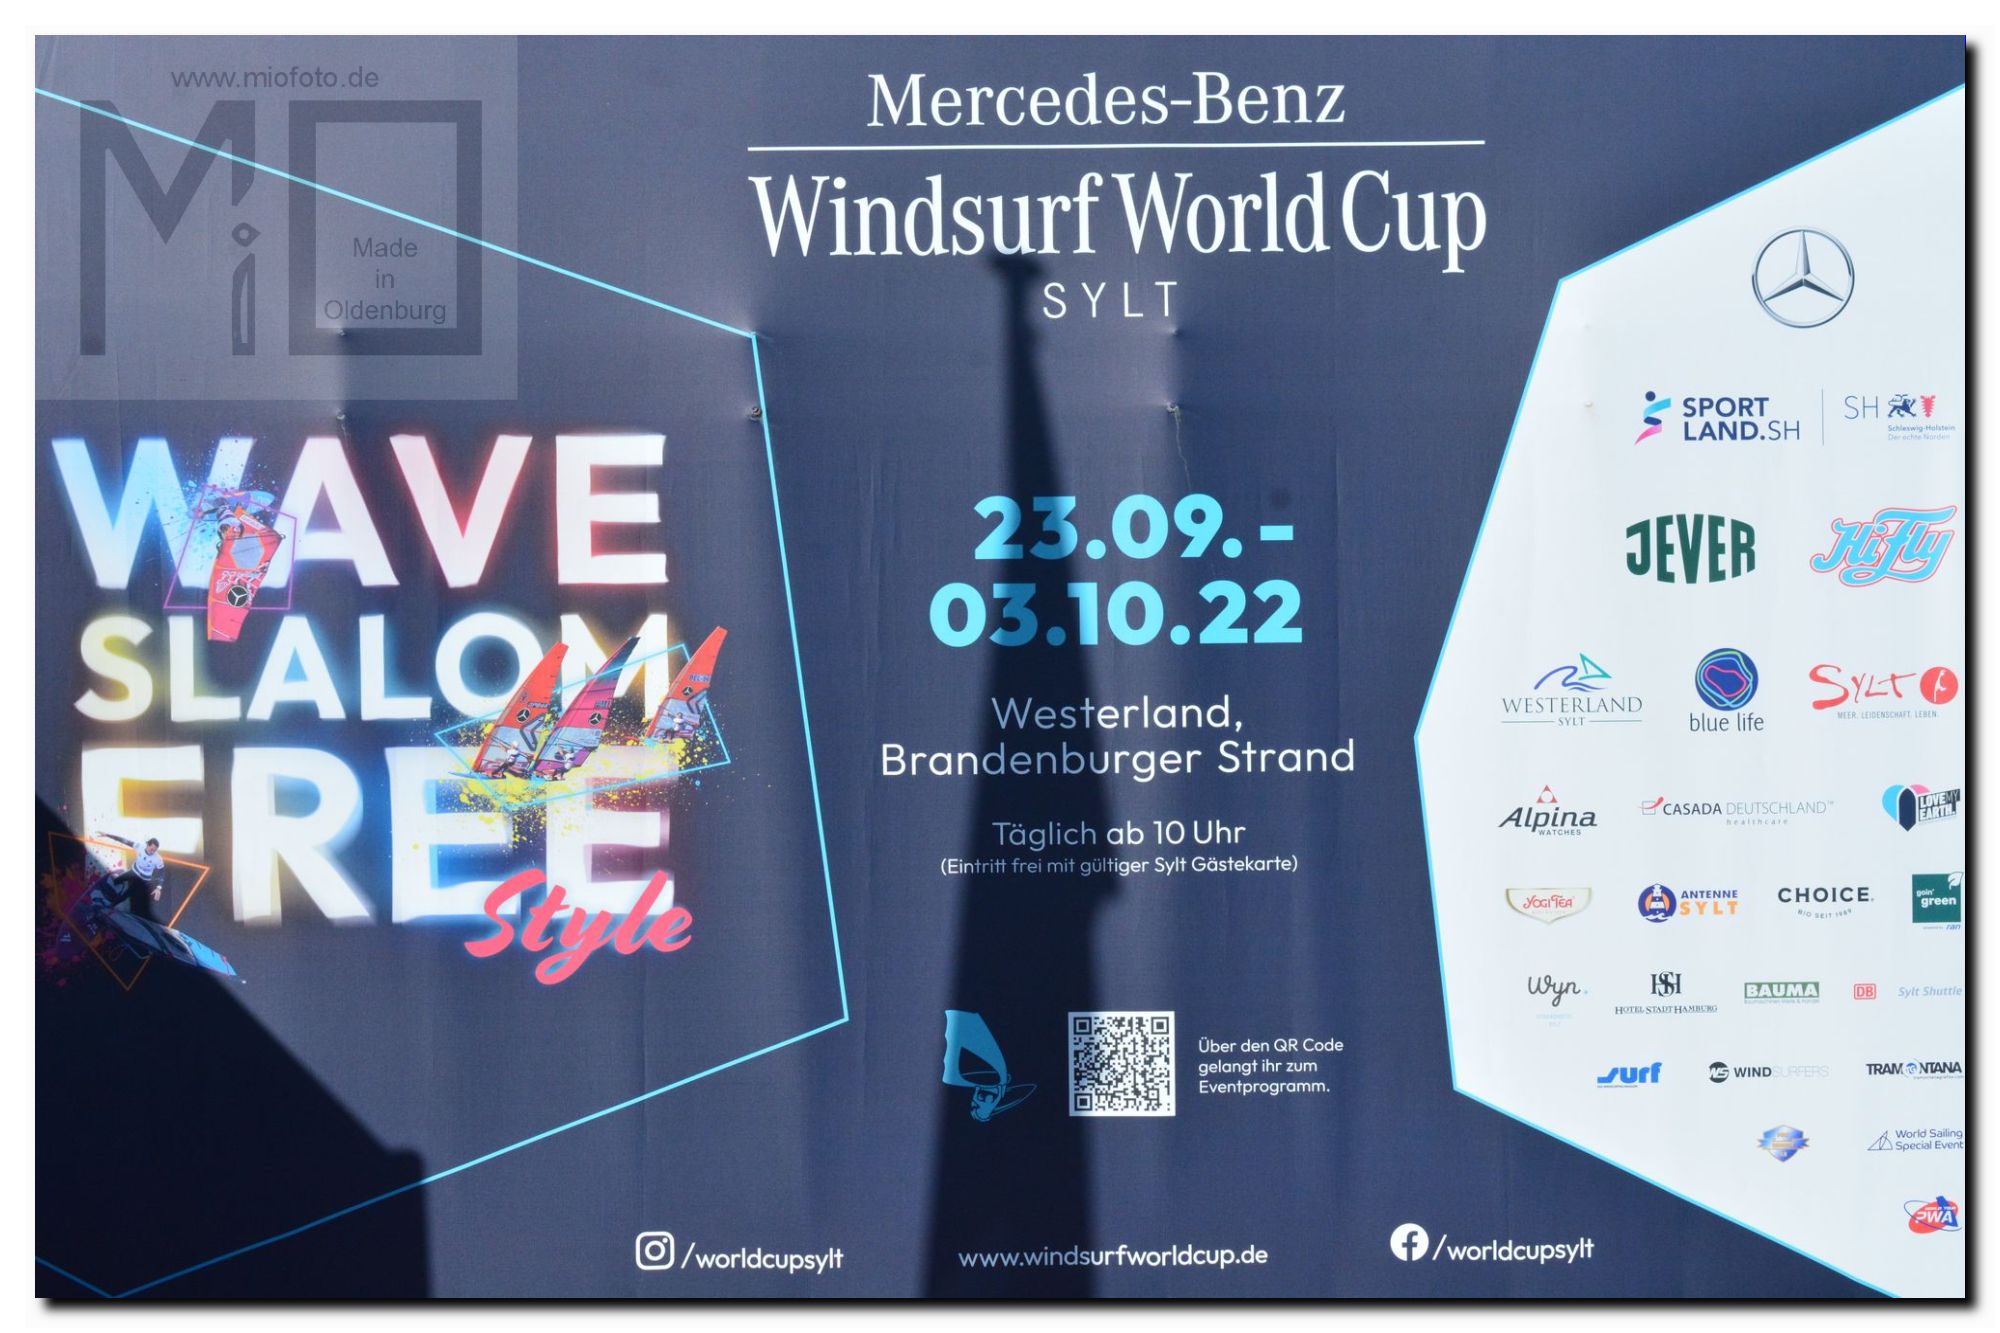 Windsurf World Cup Sylt 2022, FOTO: MiO Made in Oldenburg®, miofoto.de